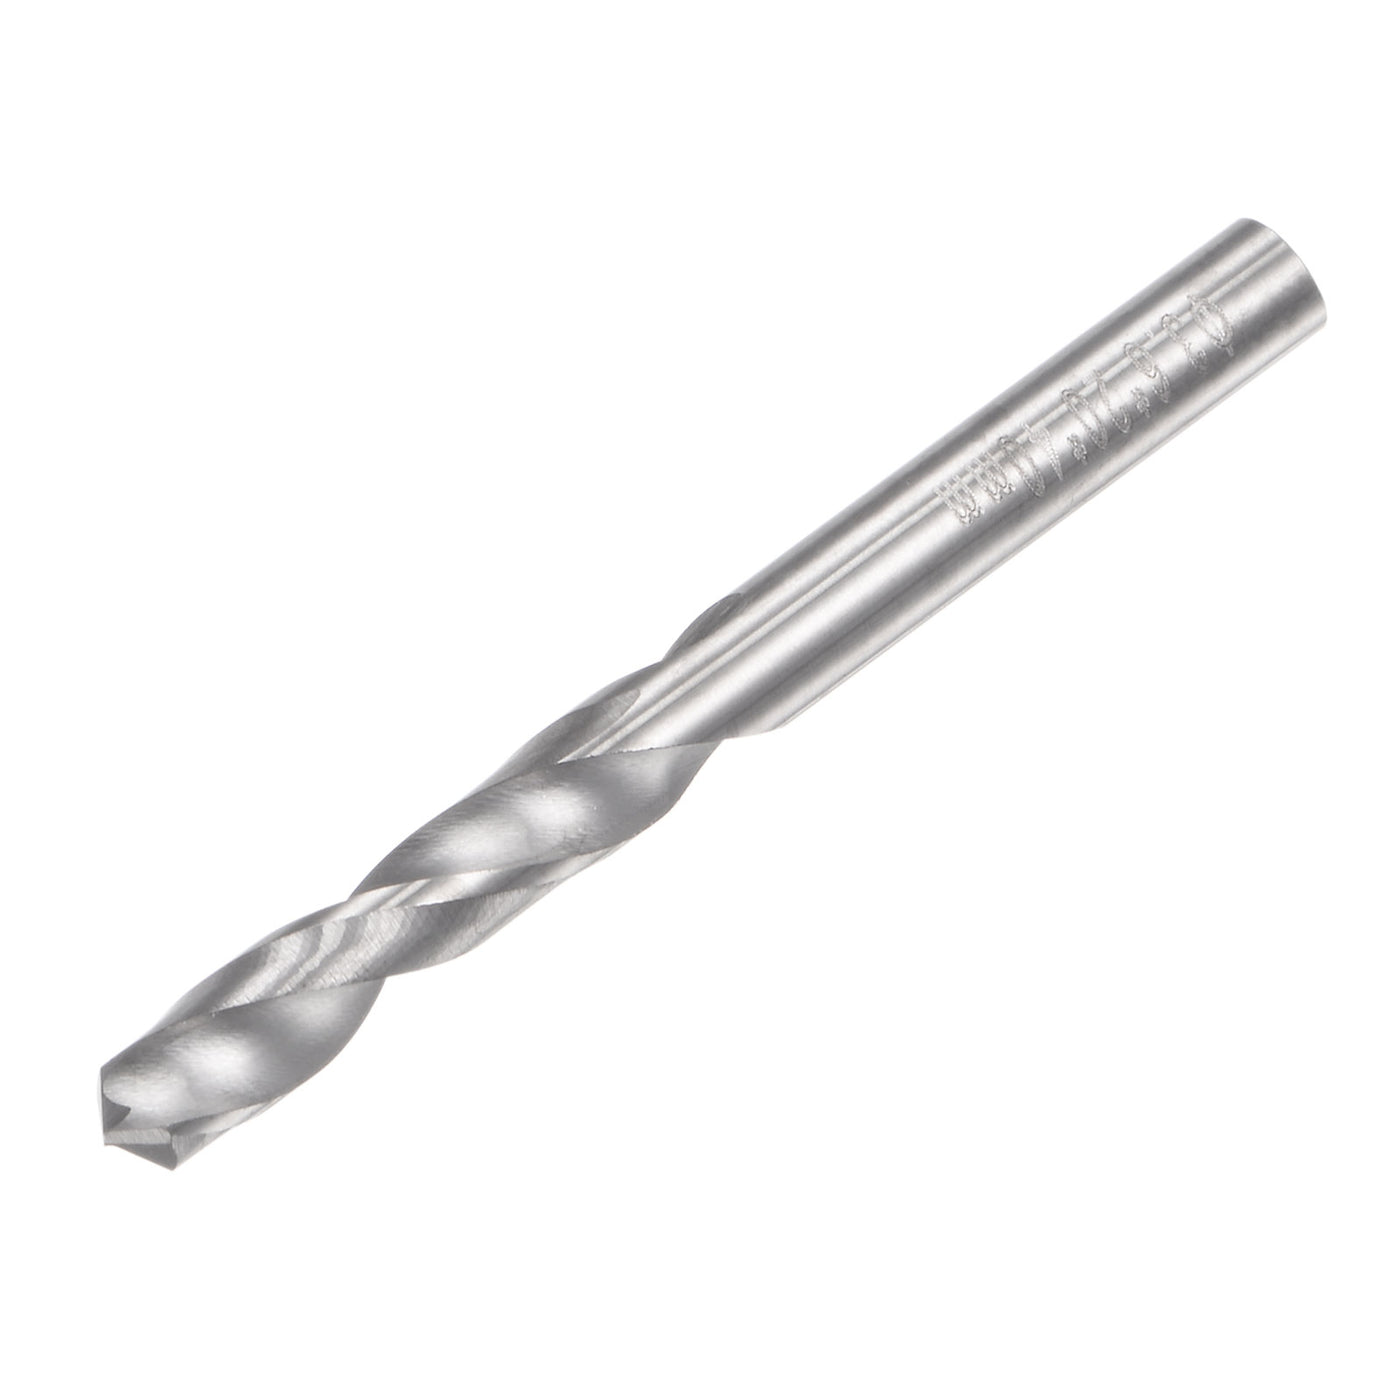 uxcell Uxcell 3.6mm C2/K20 Tungsten Carbide Straight Shank Spiral Flutes Twist Drill Bit